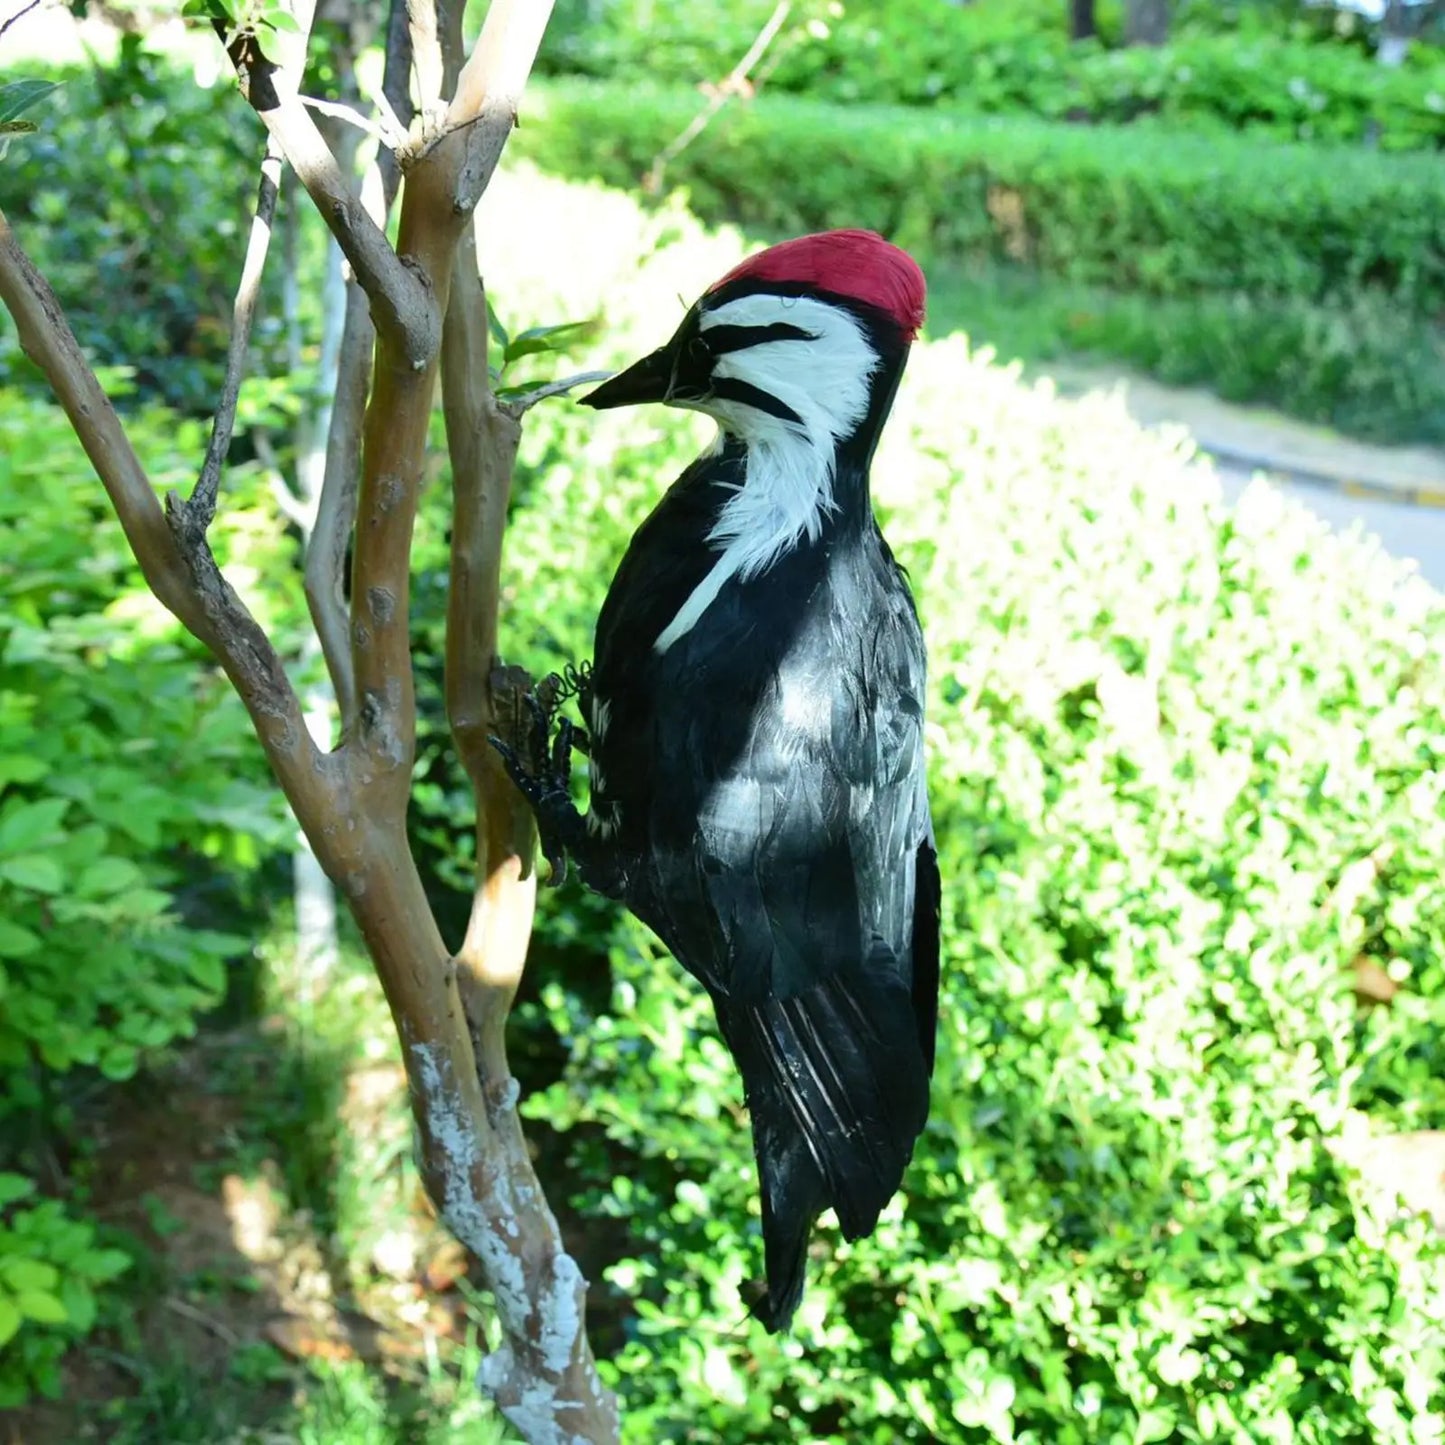 Szimulációs harkály játékok madár tavaszi toll mesterséges ajándékművészeti szobor szobor modell kerti udvari dekoráció dísz